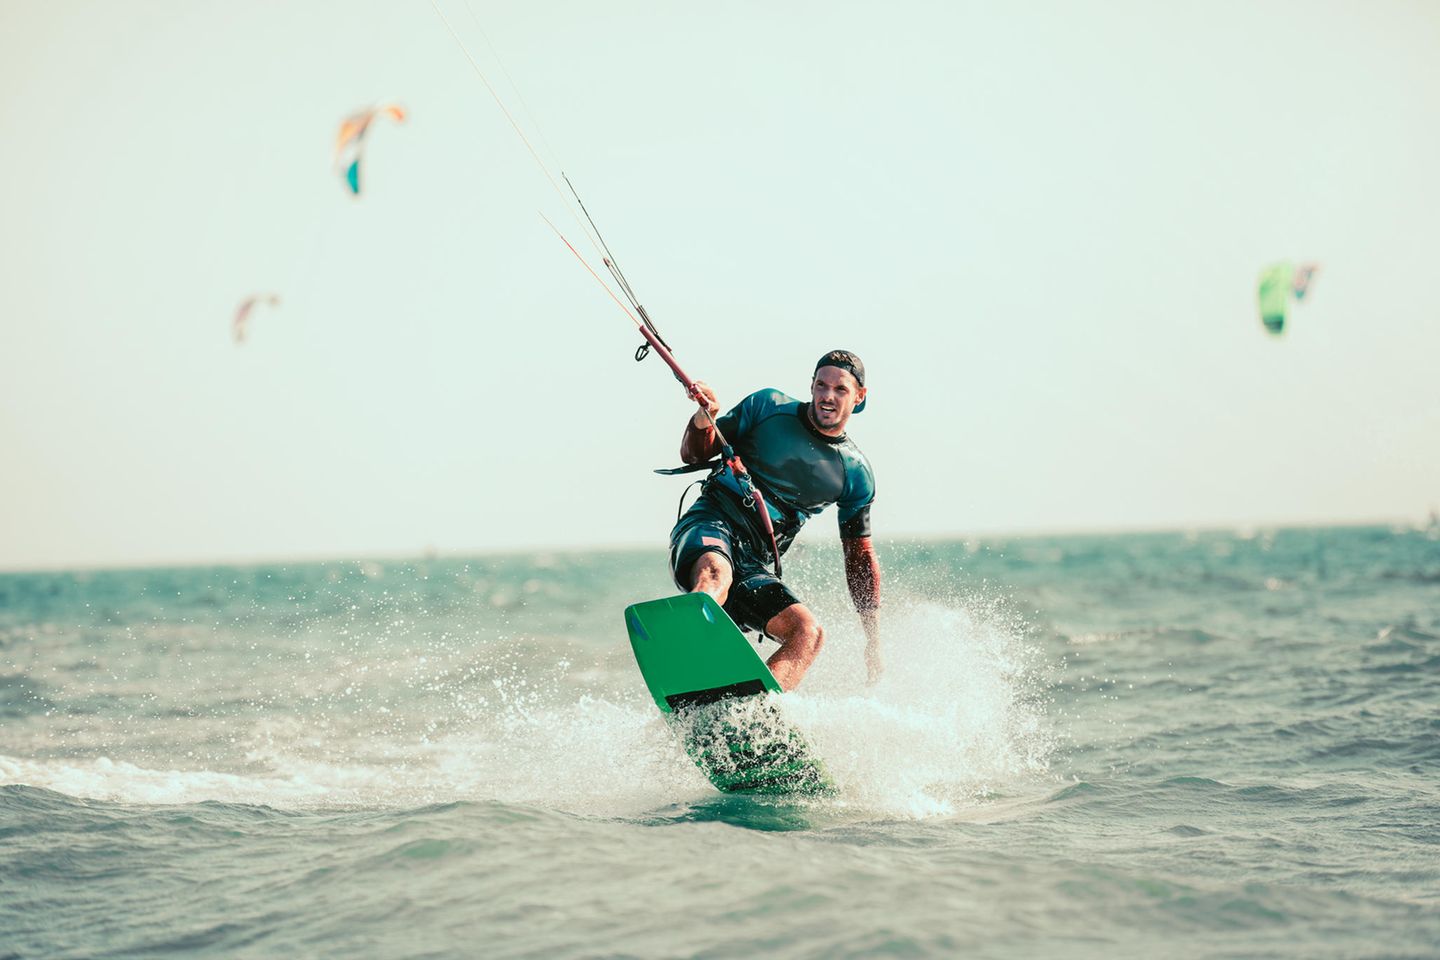 Wassersport: Mann auf dem Kiteboard